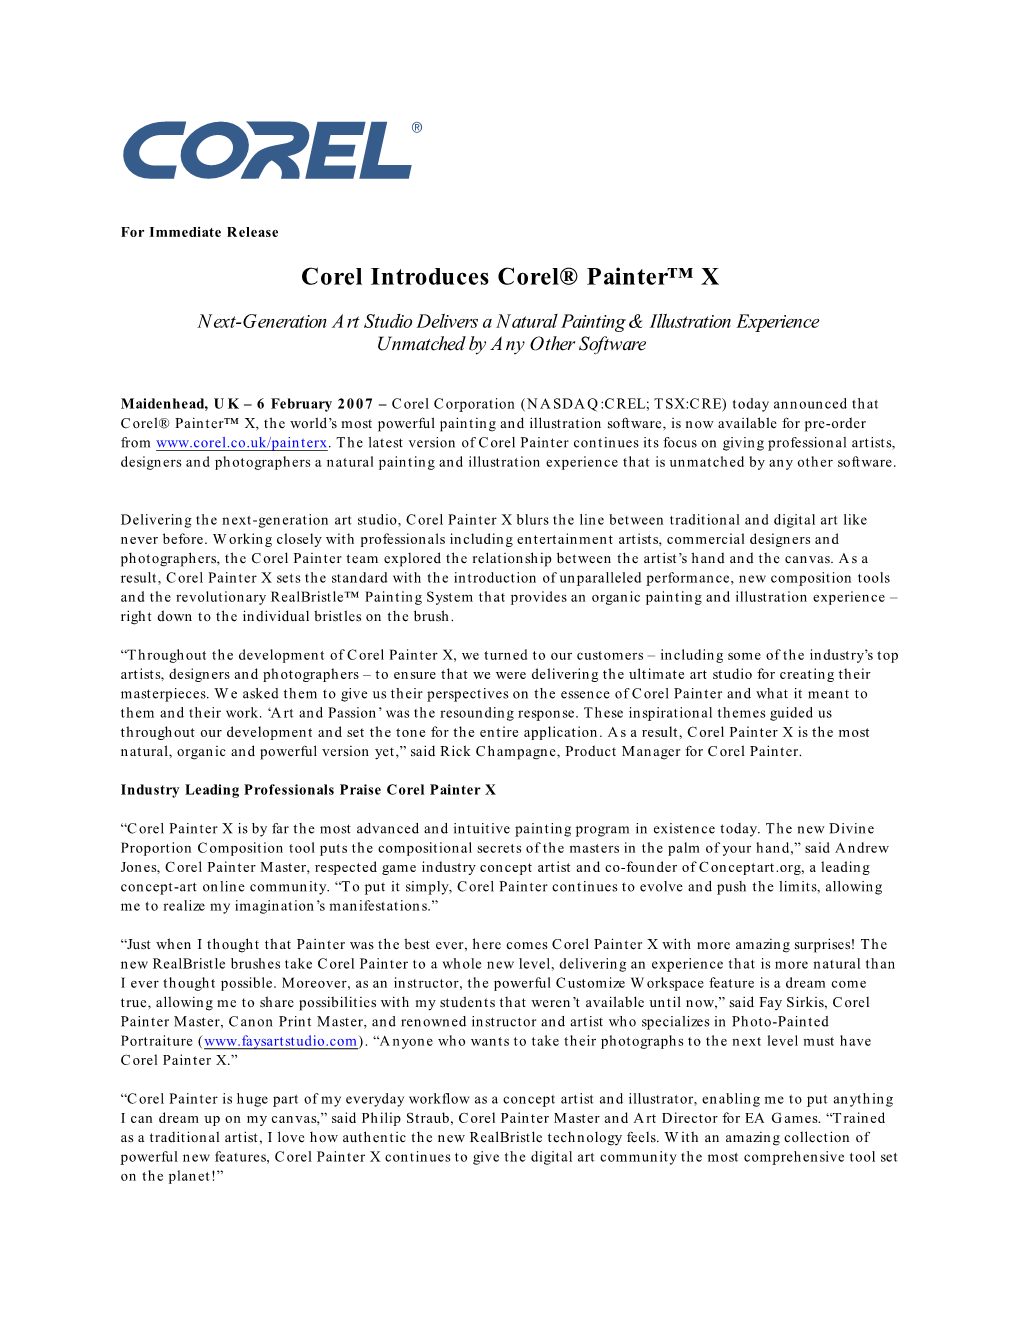 Corel Introduces Corel® Painter™ X